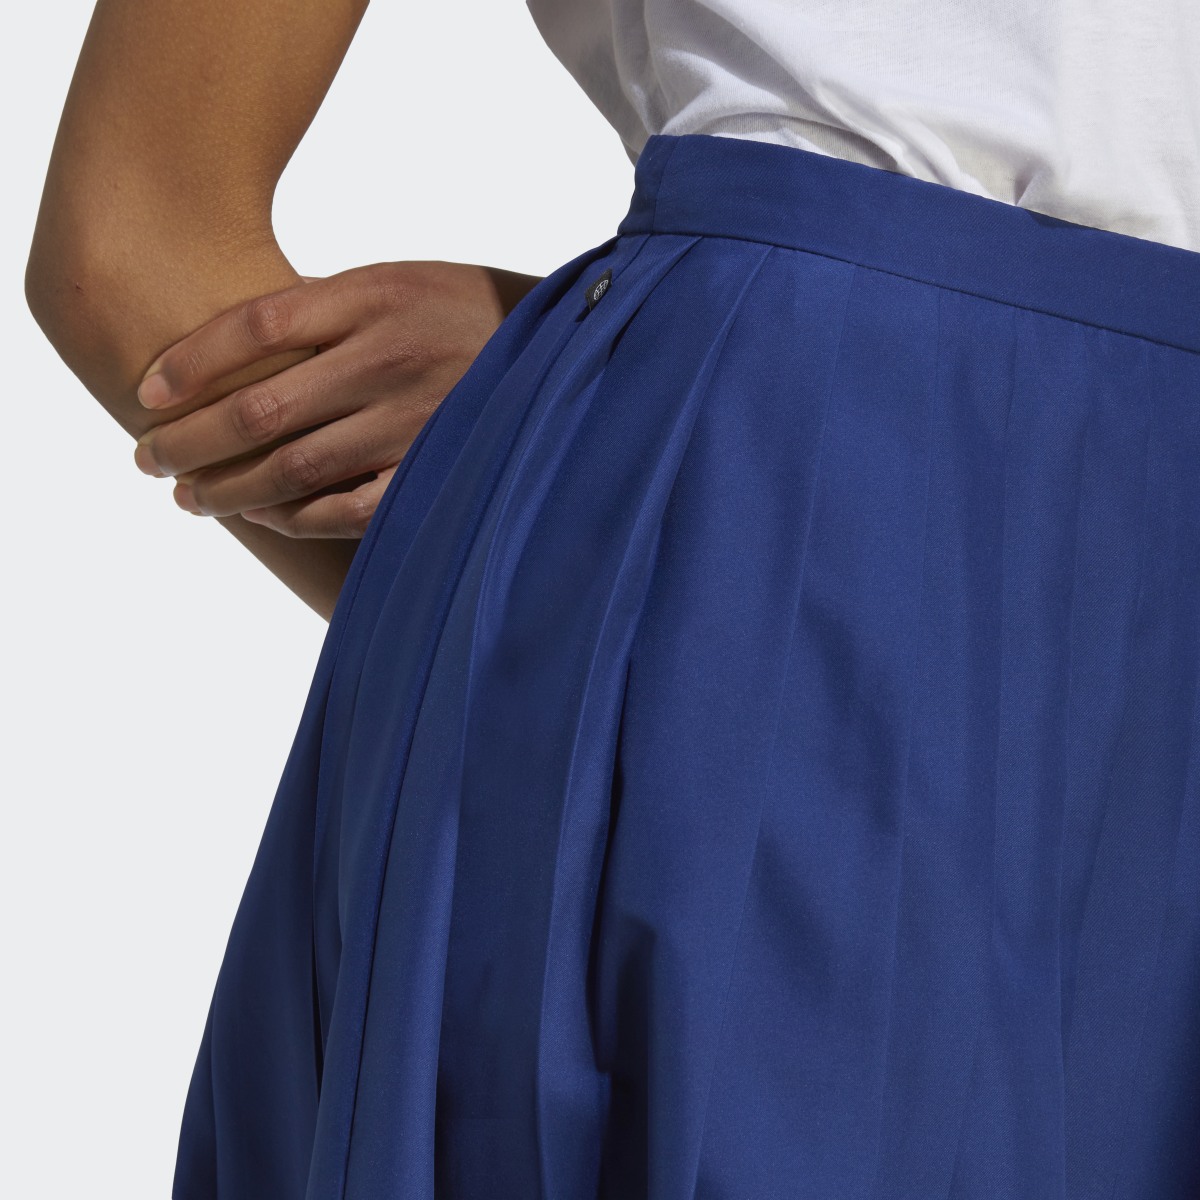 Adidas Pleated Skirt. 5